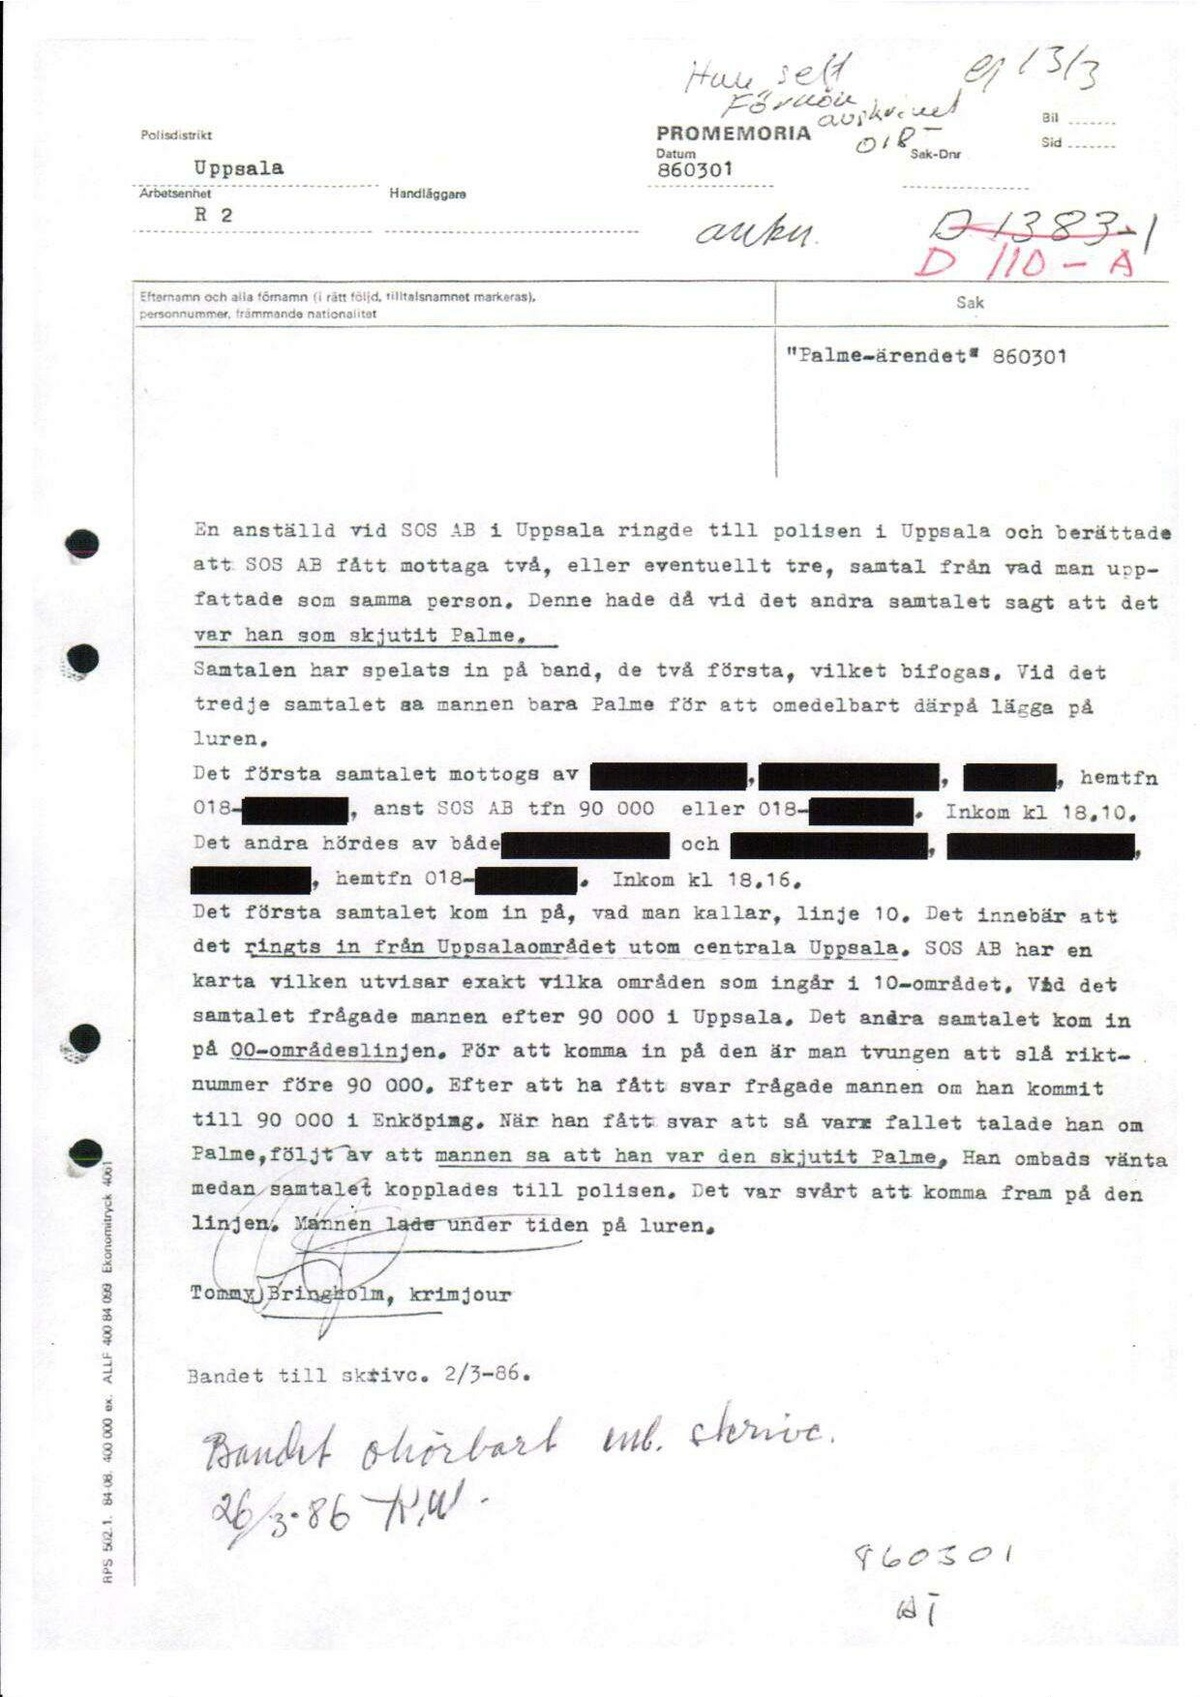 Pol-1986-03-01 D110-00-A Erkännanden Palmemordet.pdf